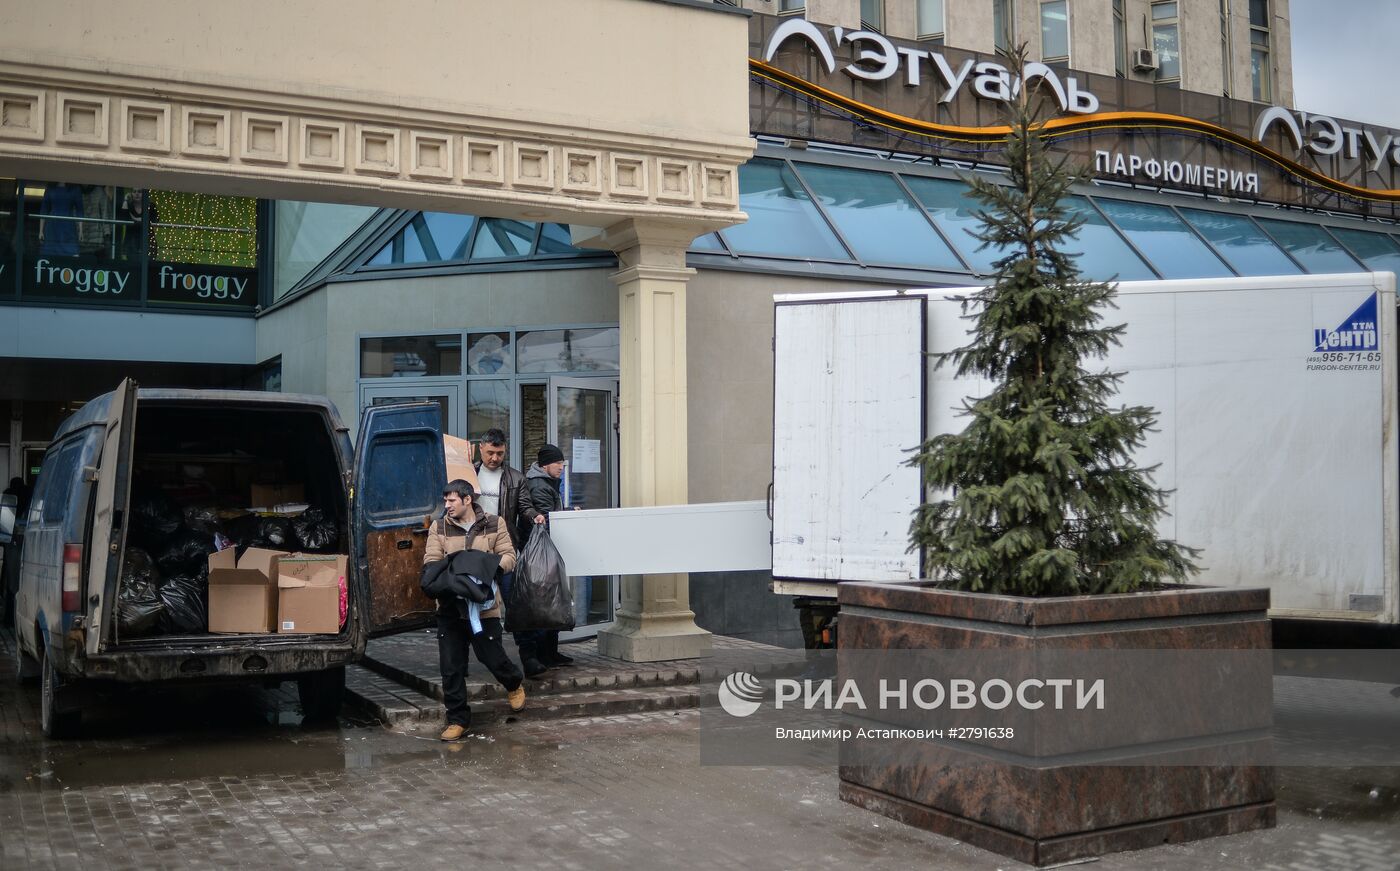 Из ТЦ "Пирамида" у метро "Пушкинская" начали вывозить имущество